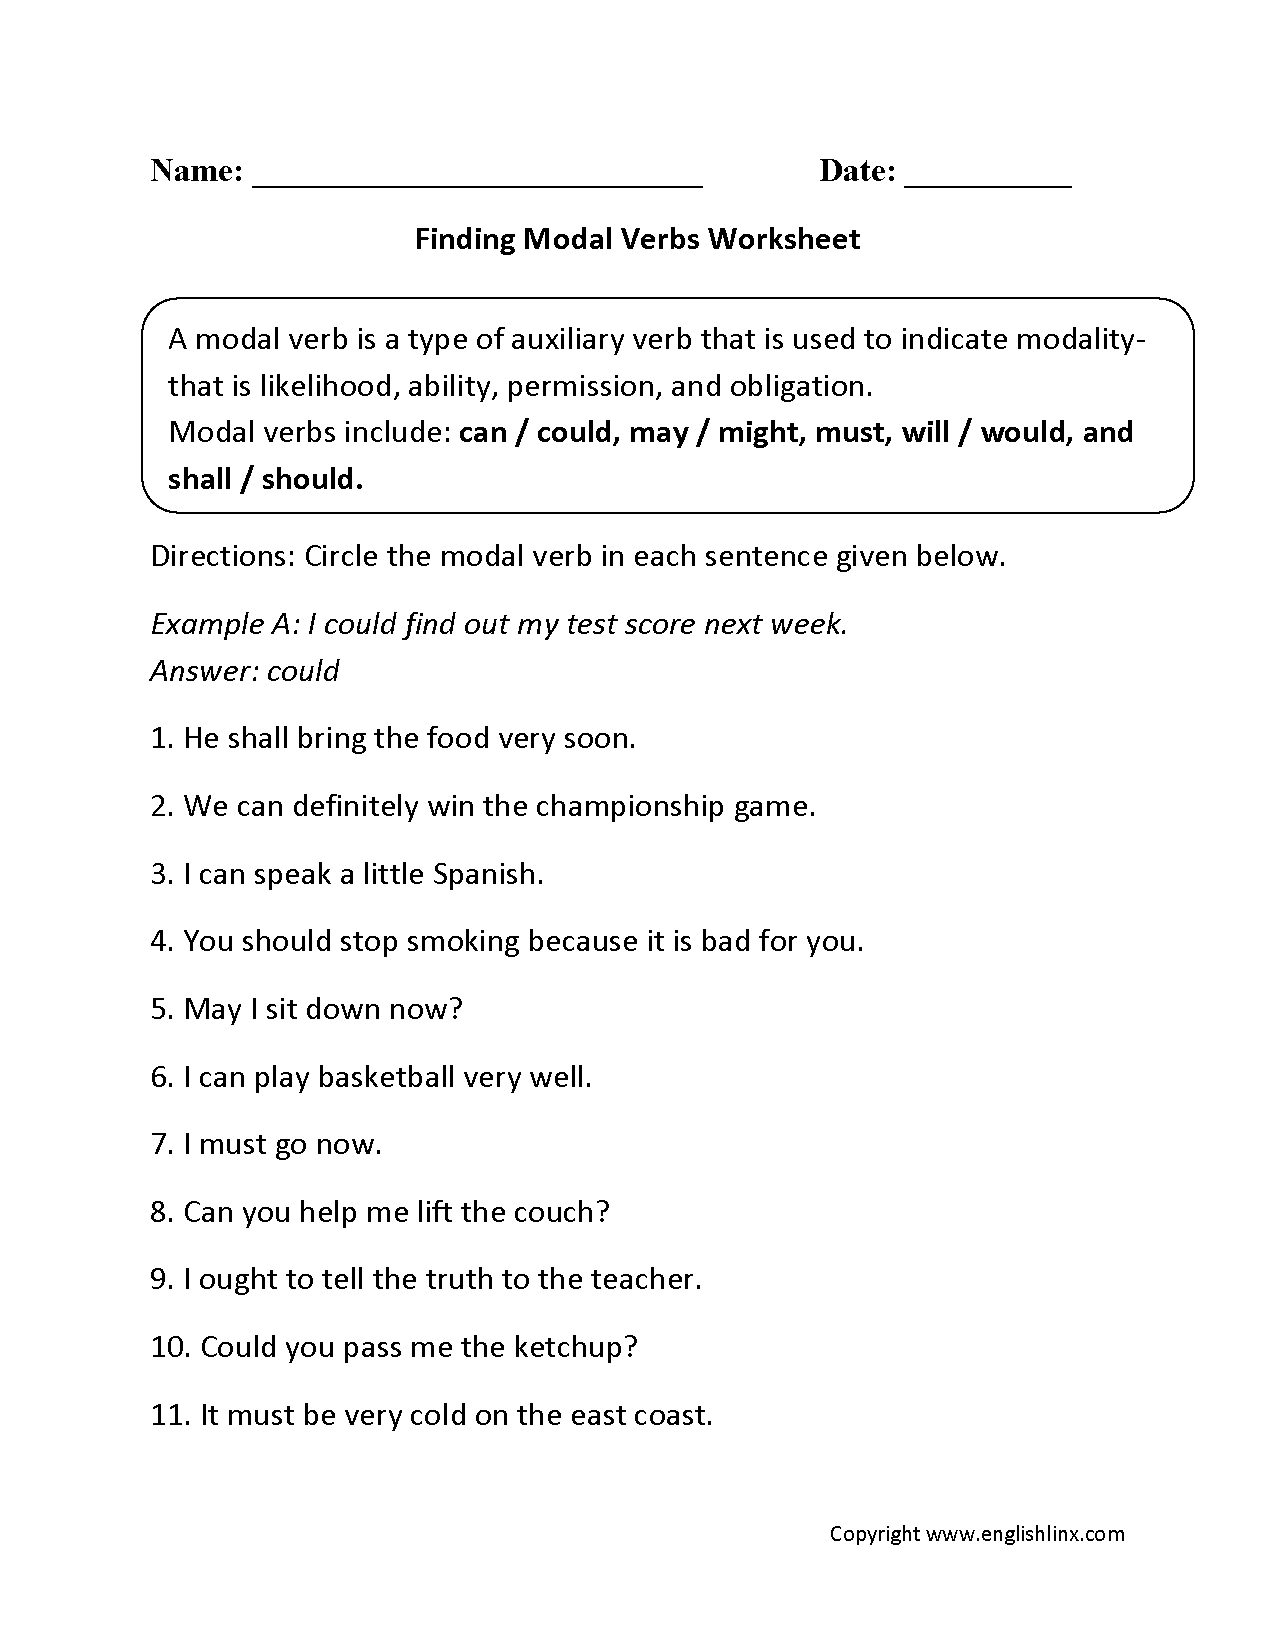 Verbs Worksheets  Modal Verbs Worksheets And Modal Verbs Ks2 Worksheet